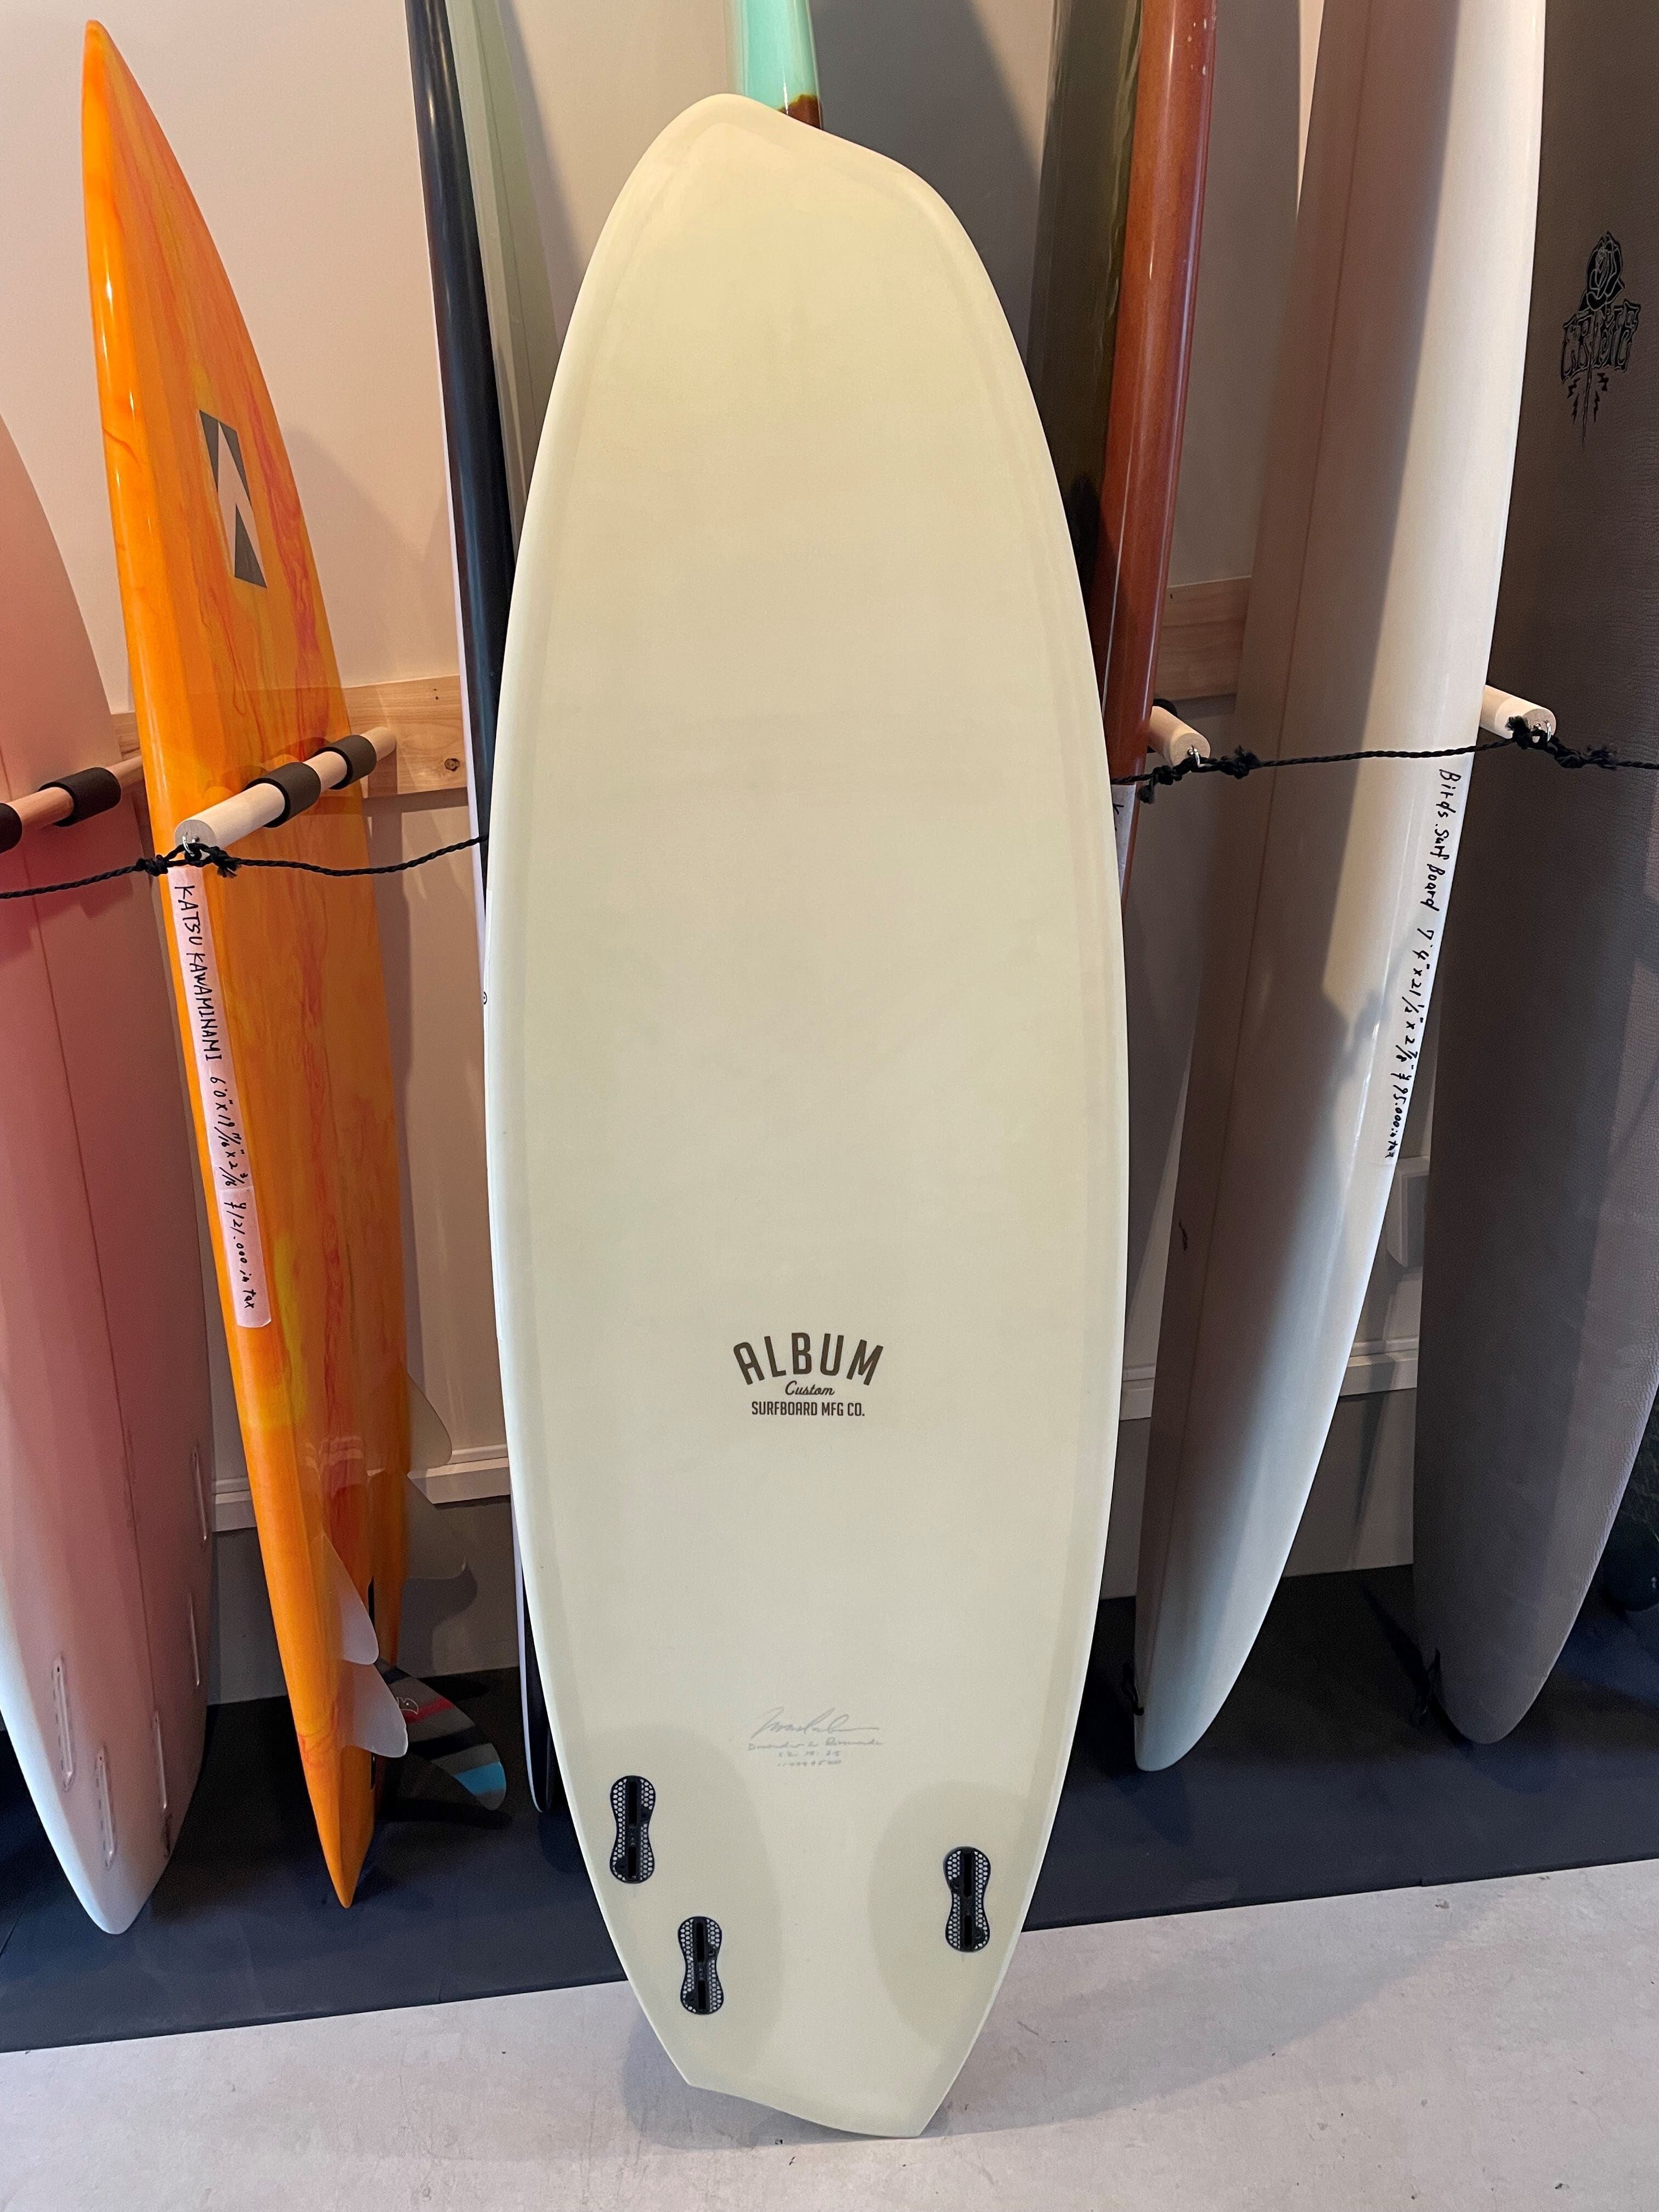 ALBUM SURF BOARD 5'6 | Mild Wild powered by BASE